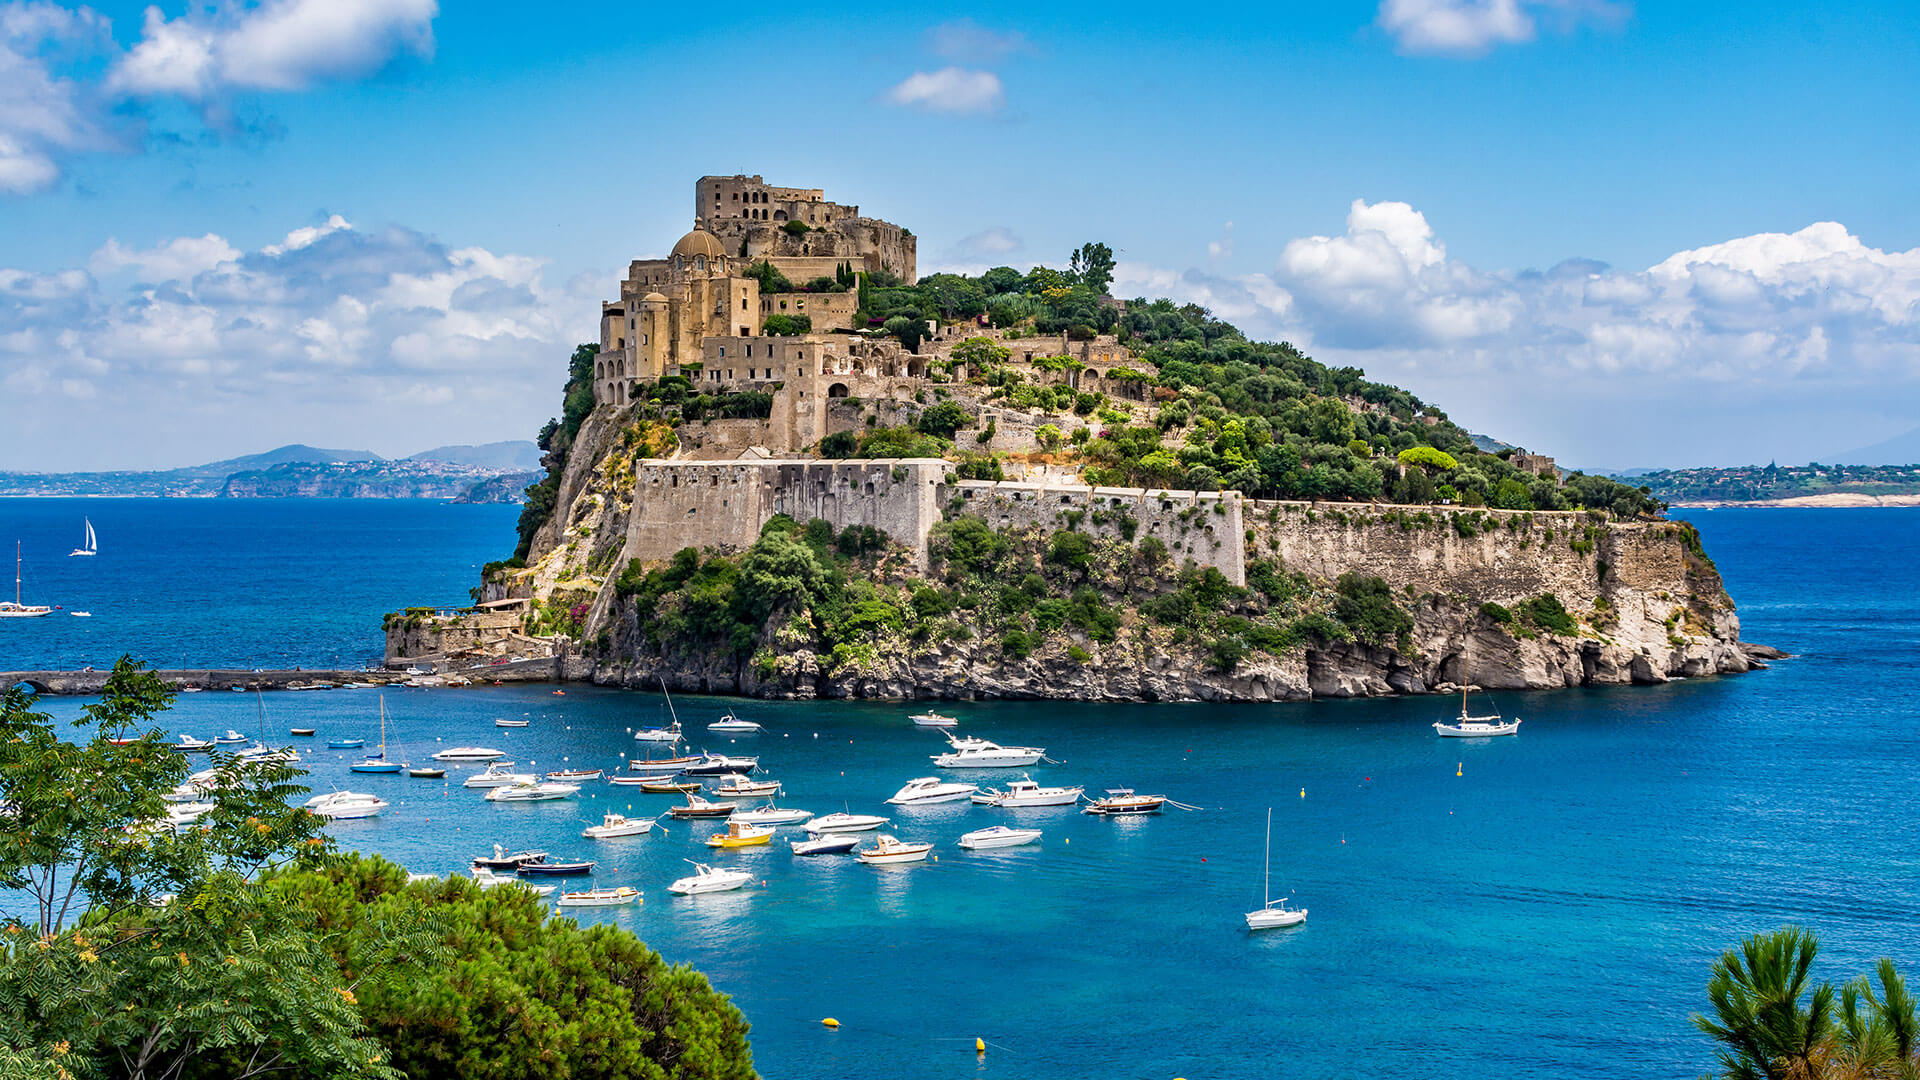 Castello Aragonese auf Ischia - das Wahrzeichen der Insel